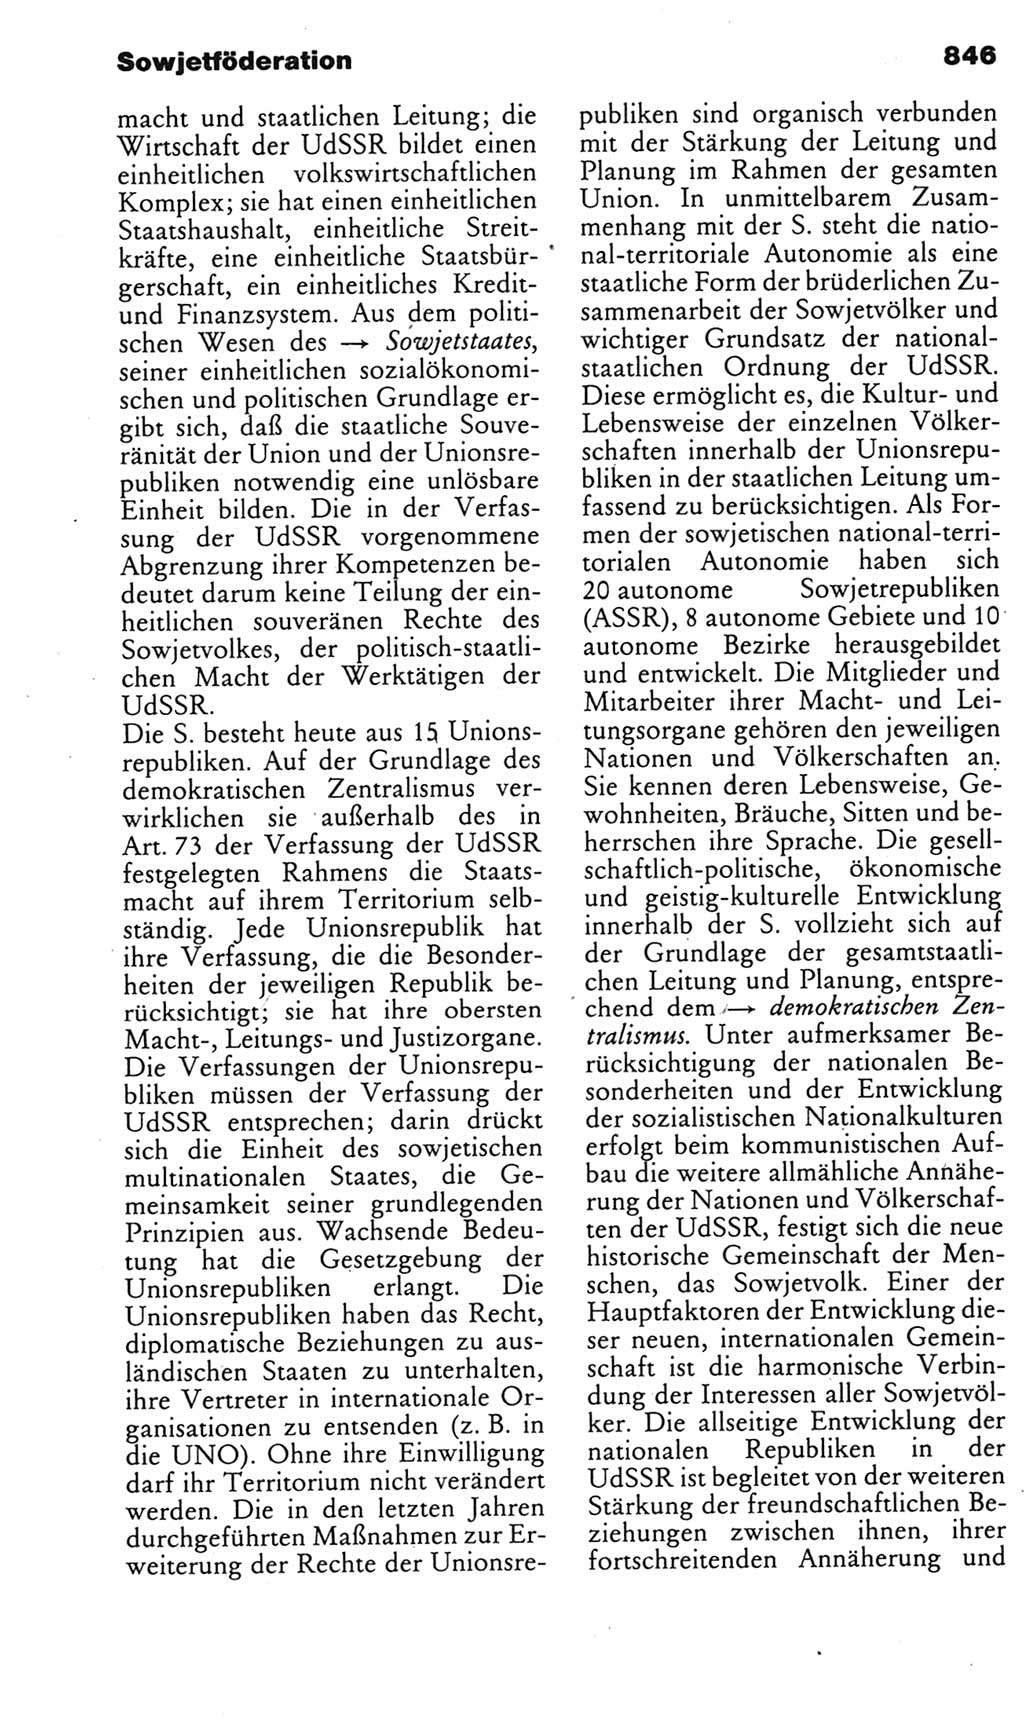 Kleines politisches Wörterbuch [Deutsche Demokratische Republik (DDR)] 1985, Seite 846 (Kl. pol. Wb. DDR 1985, S. 846)